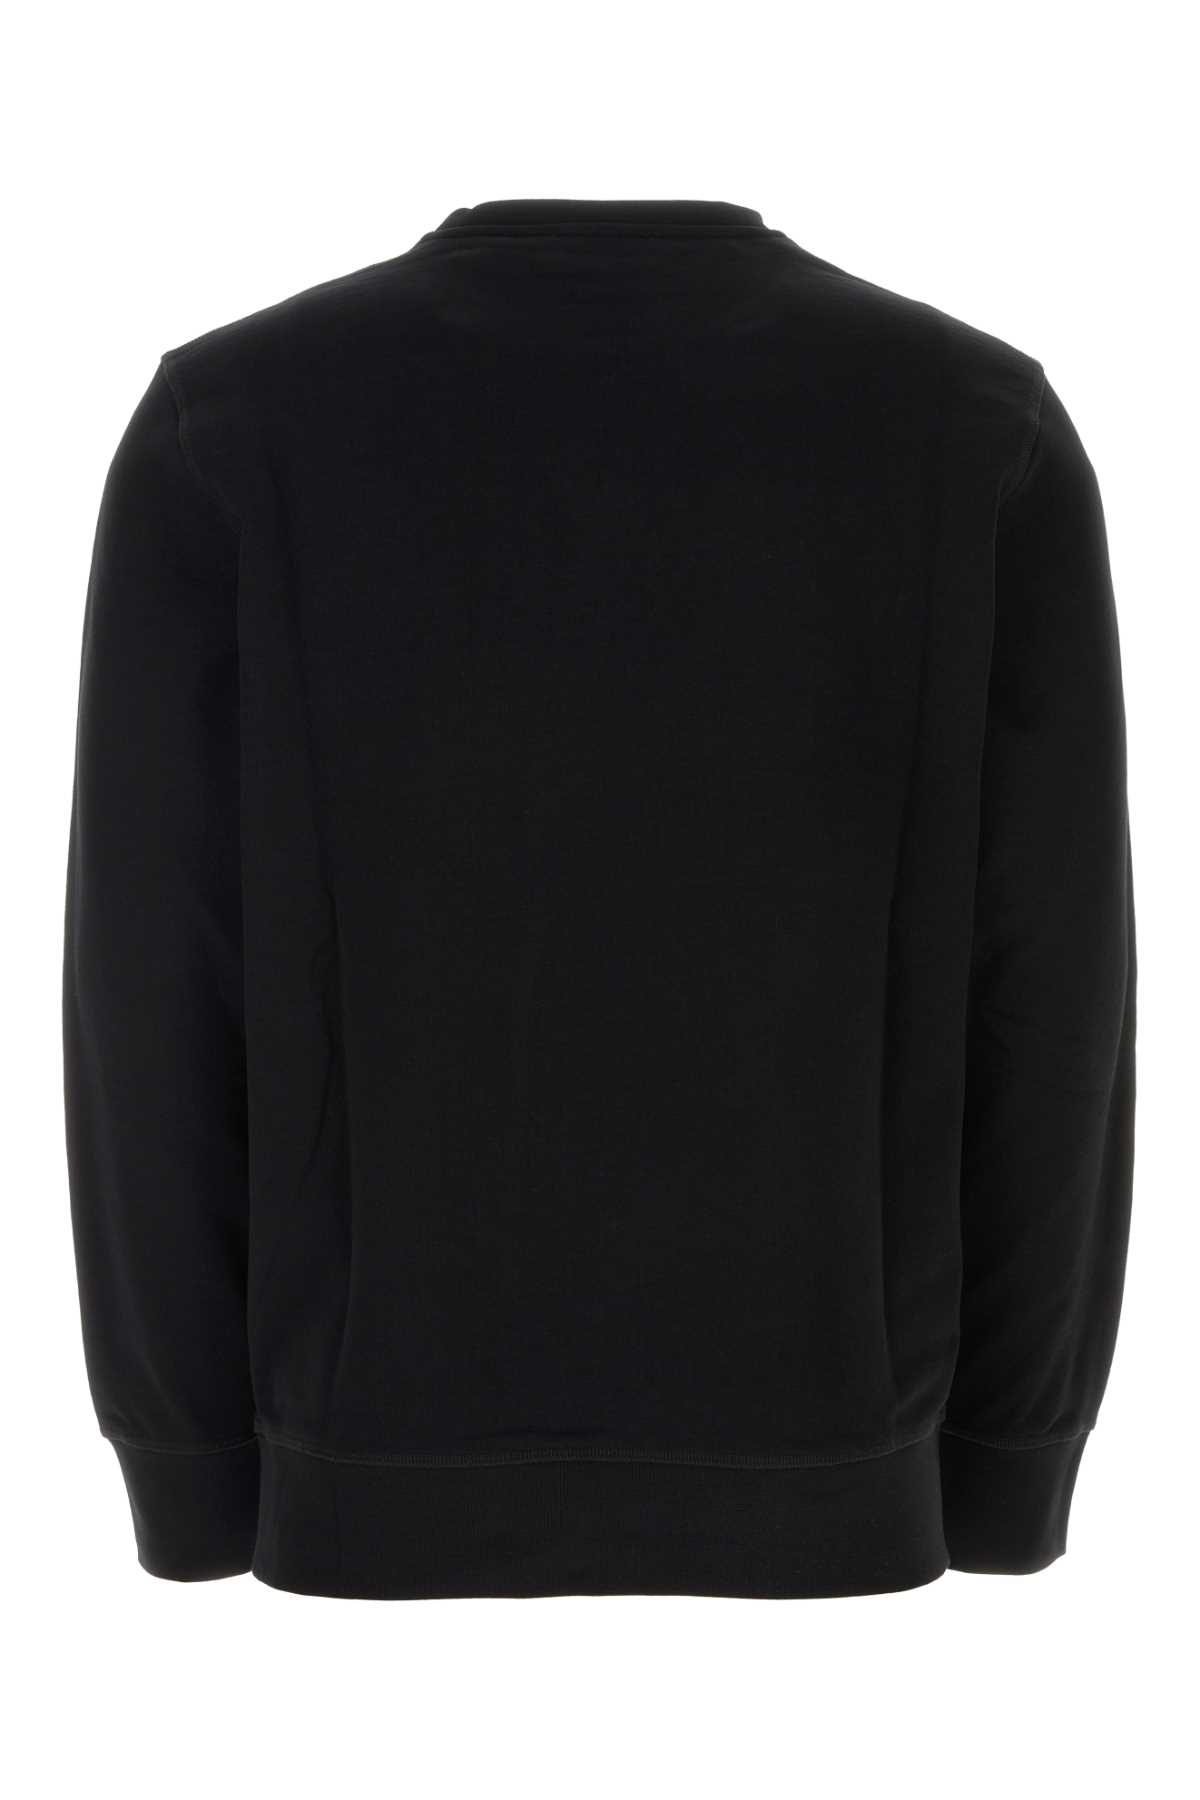 Alexander Mcqueen Black Cotton Sweatshirt In 0901